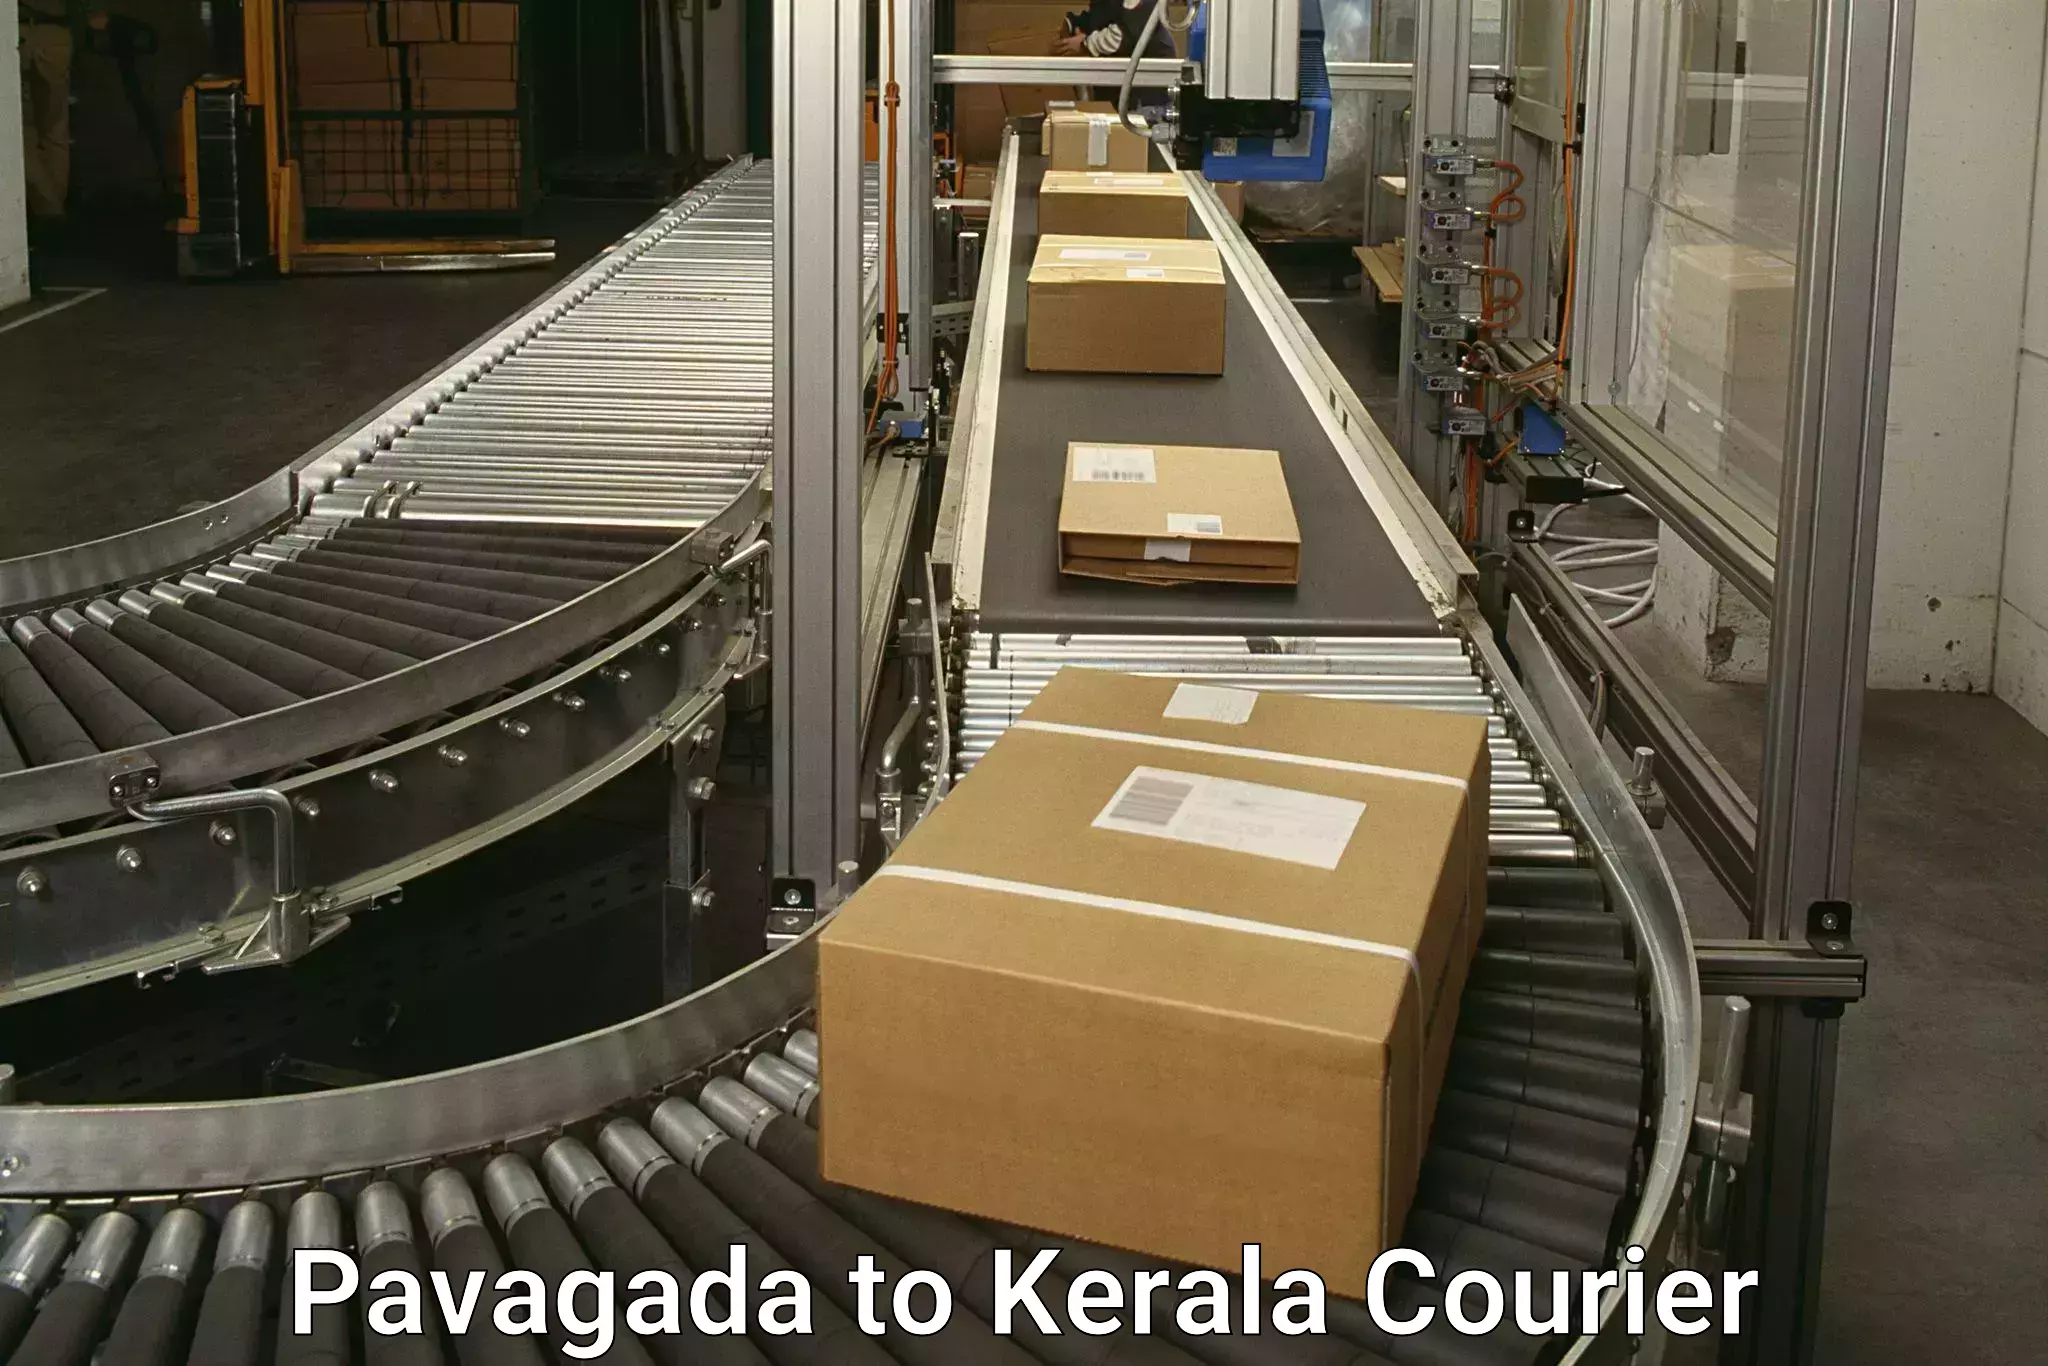 Door-to-door freight service Pavagada to Kollam